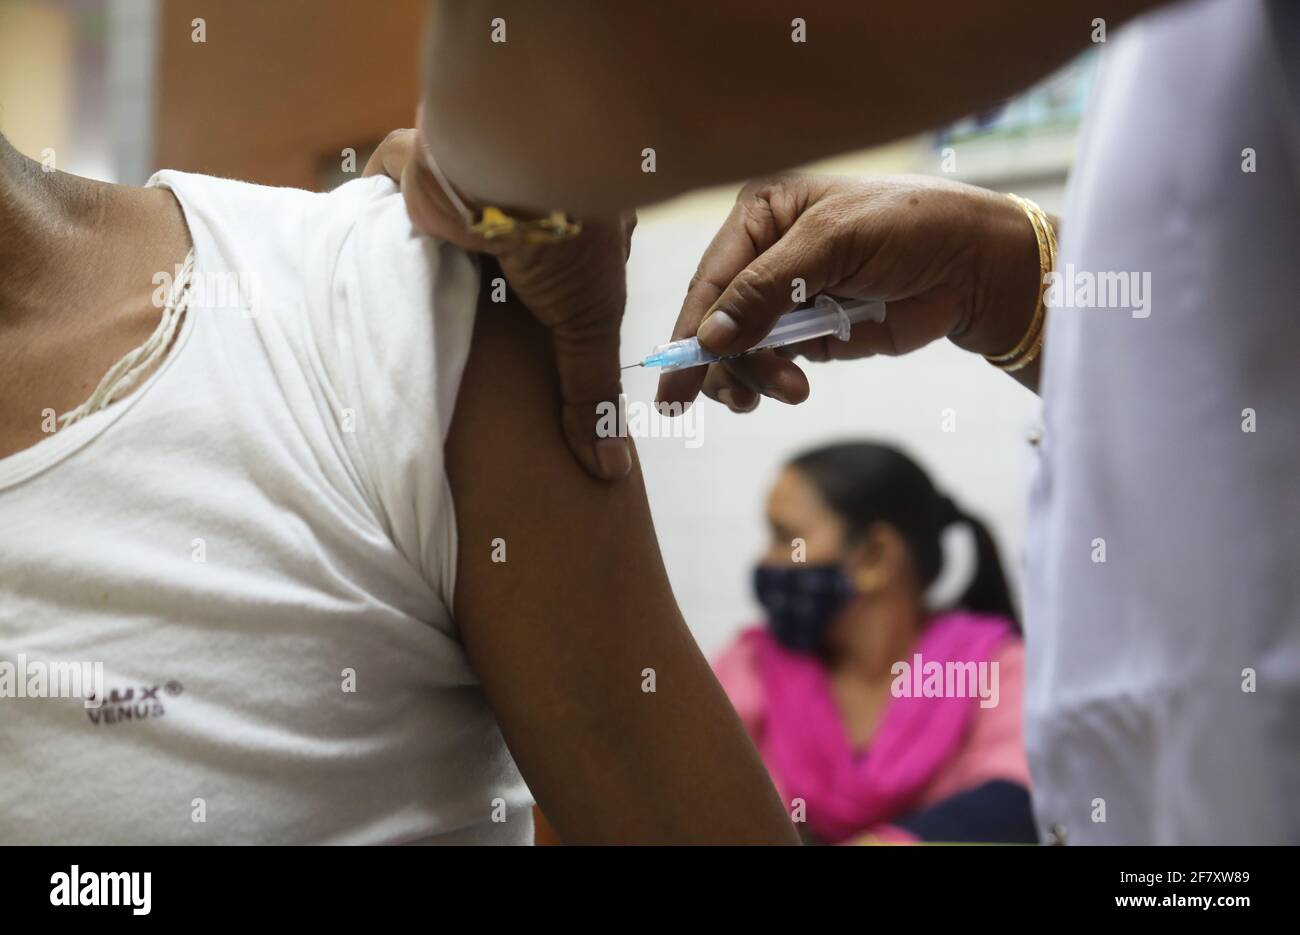 Ein Mann erhält eine Dosis des von Bharat Biotech entwickelten indischen Covid-19-Impfstoffes COVAXIN während einer Impfkampagne in einem staatlichen Gesundheitszentrum.die kumulative Anzahl der Covid-19-Impfstoffdosen, die am Freitag im Land verabreicht wurden, überstieg 98 Millionen, In den letzten 24 Stunden wurden fast 34 Impfdosen verabreicht. Stockfoto